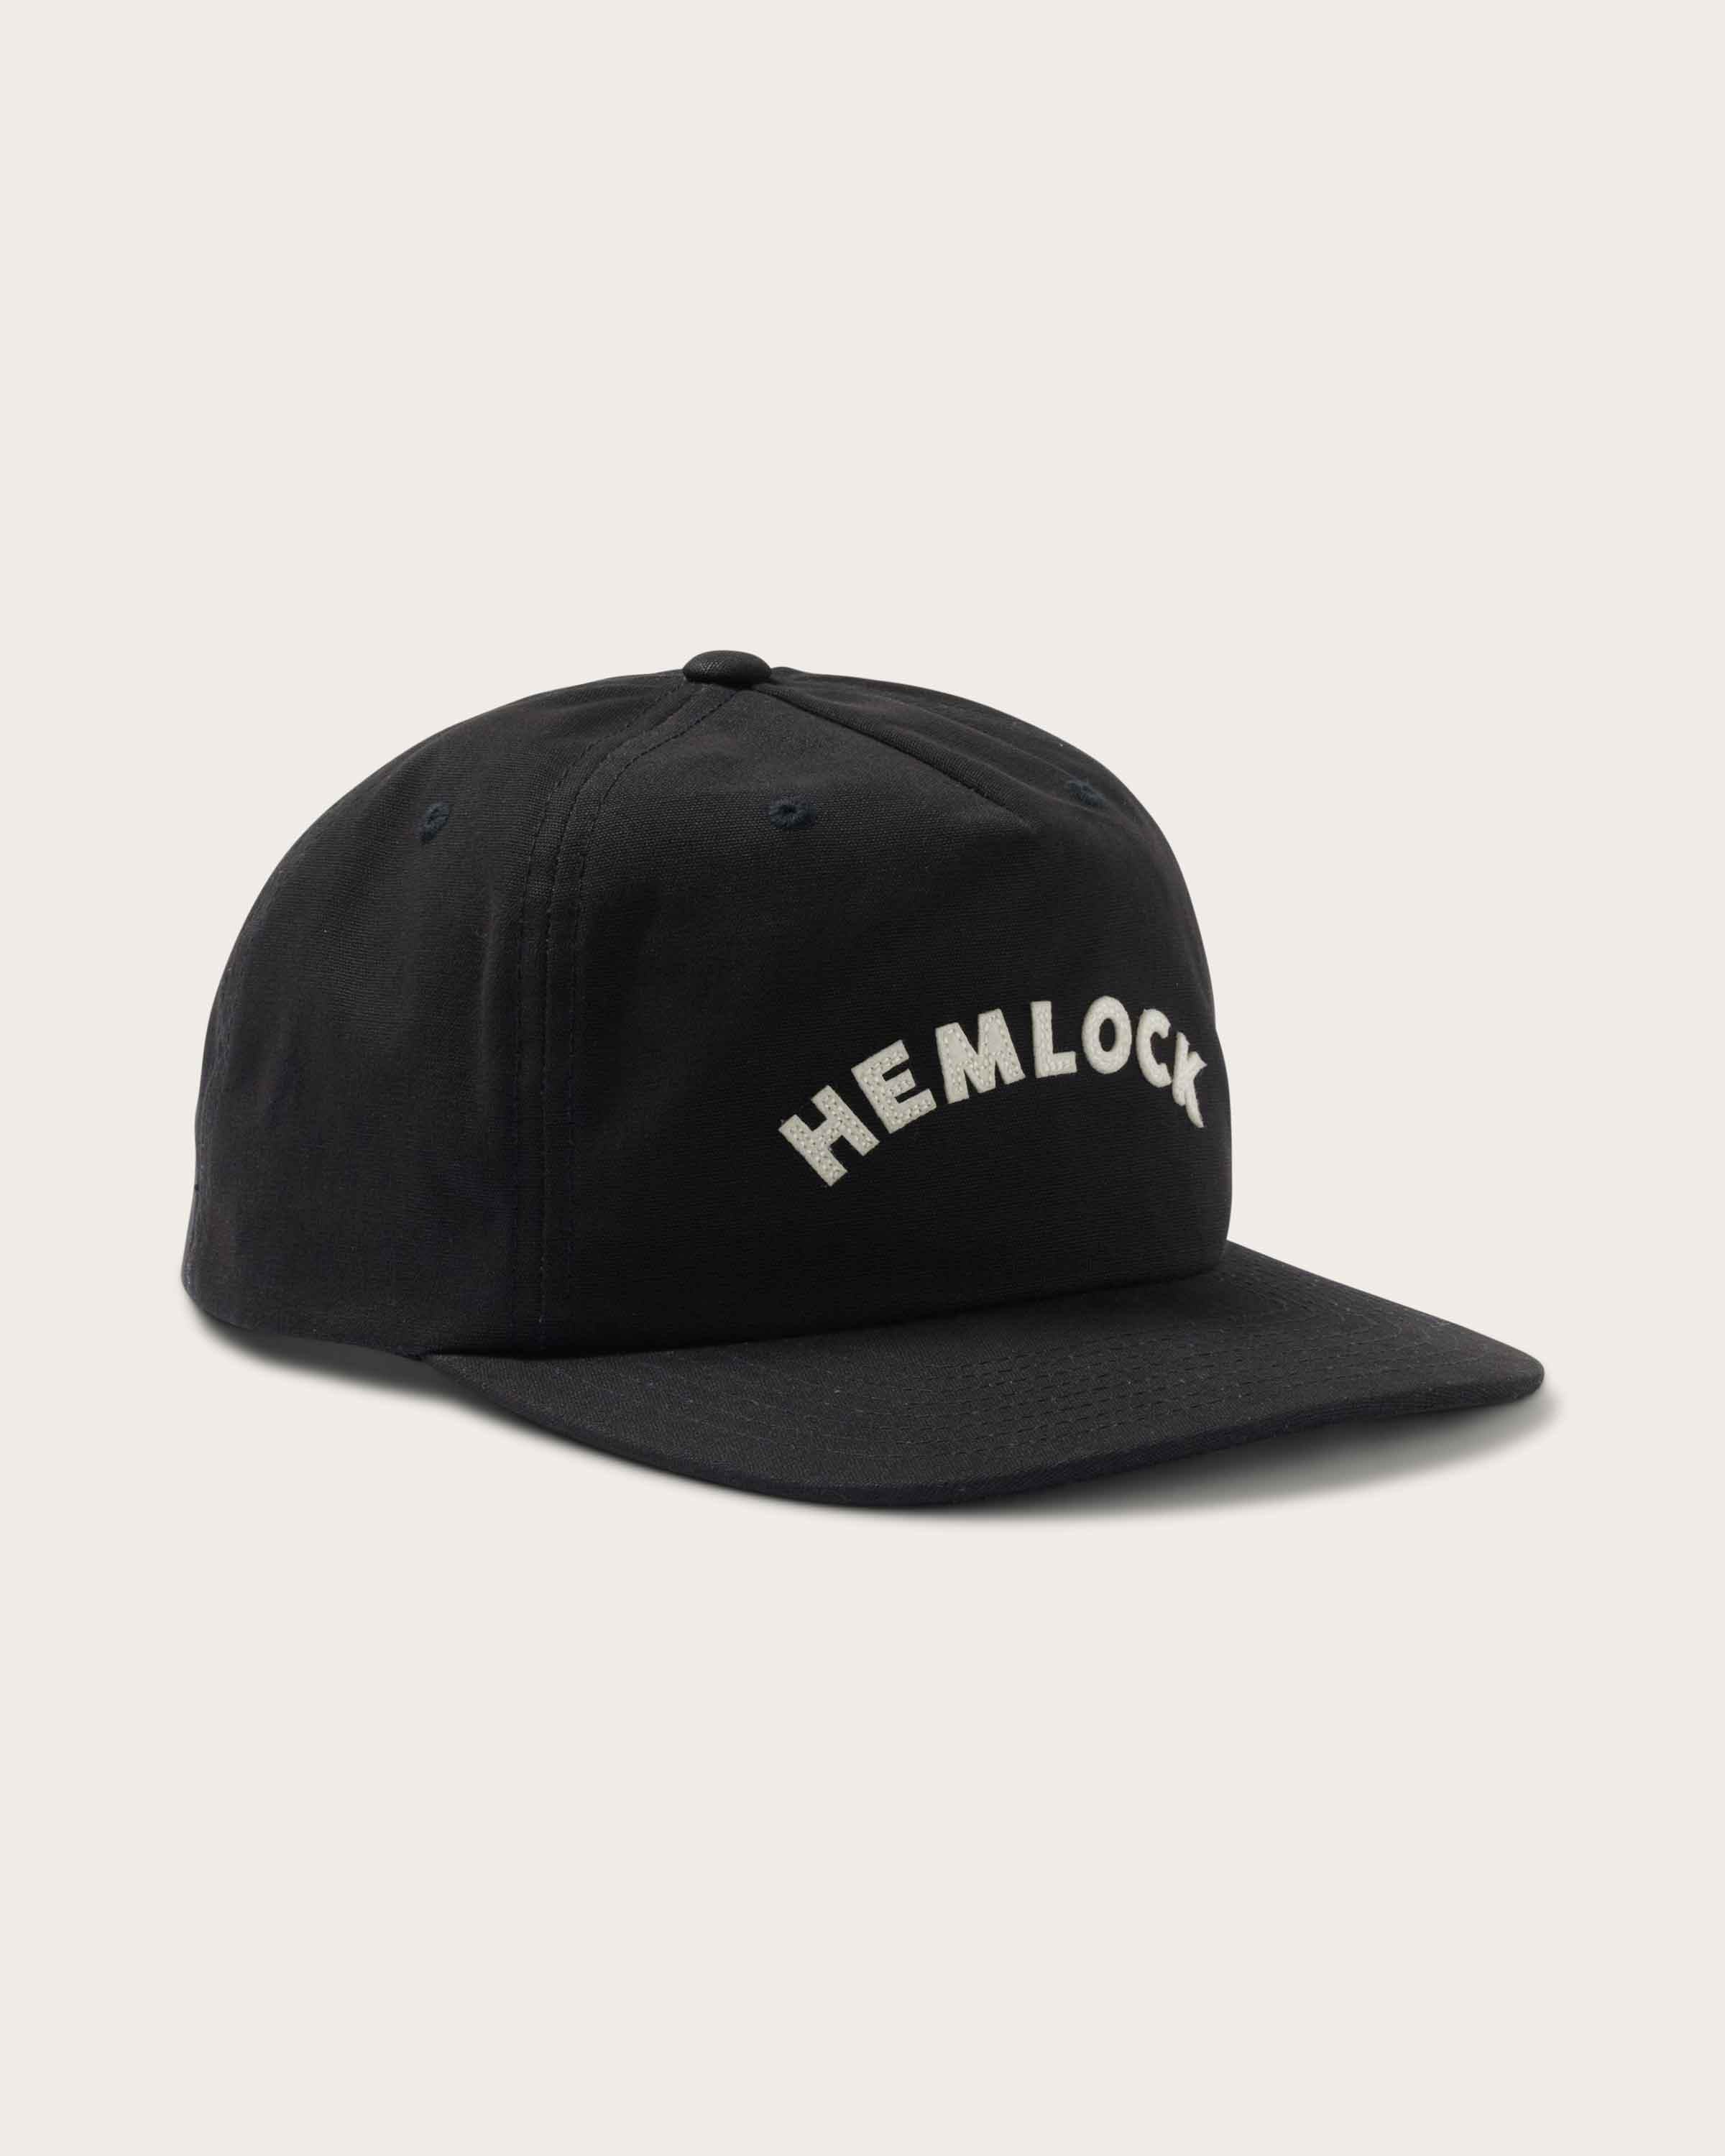 Alden 5 Panel Hat in Black - undefined - Hemlock Hat Co. Ball Caps